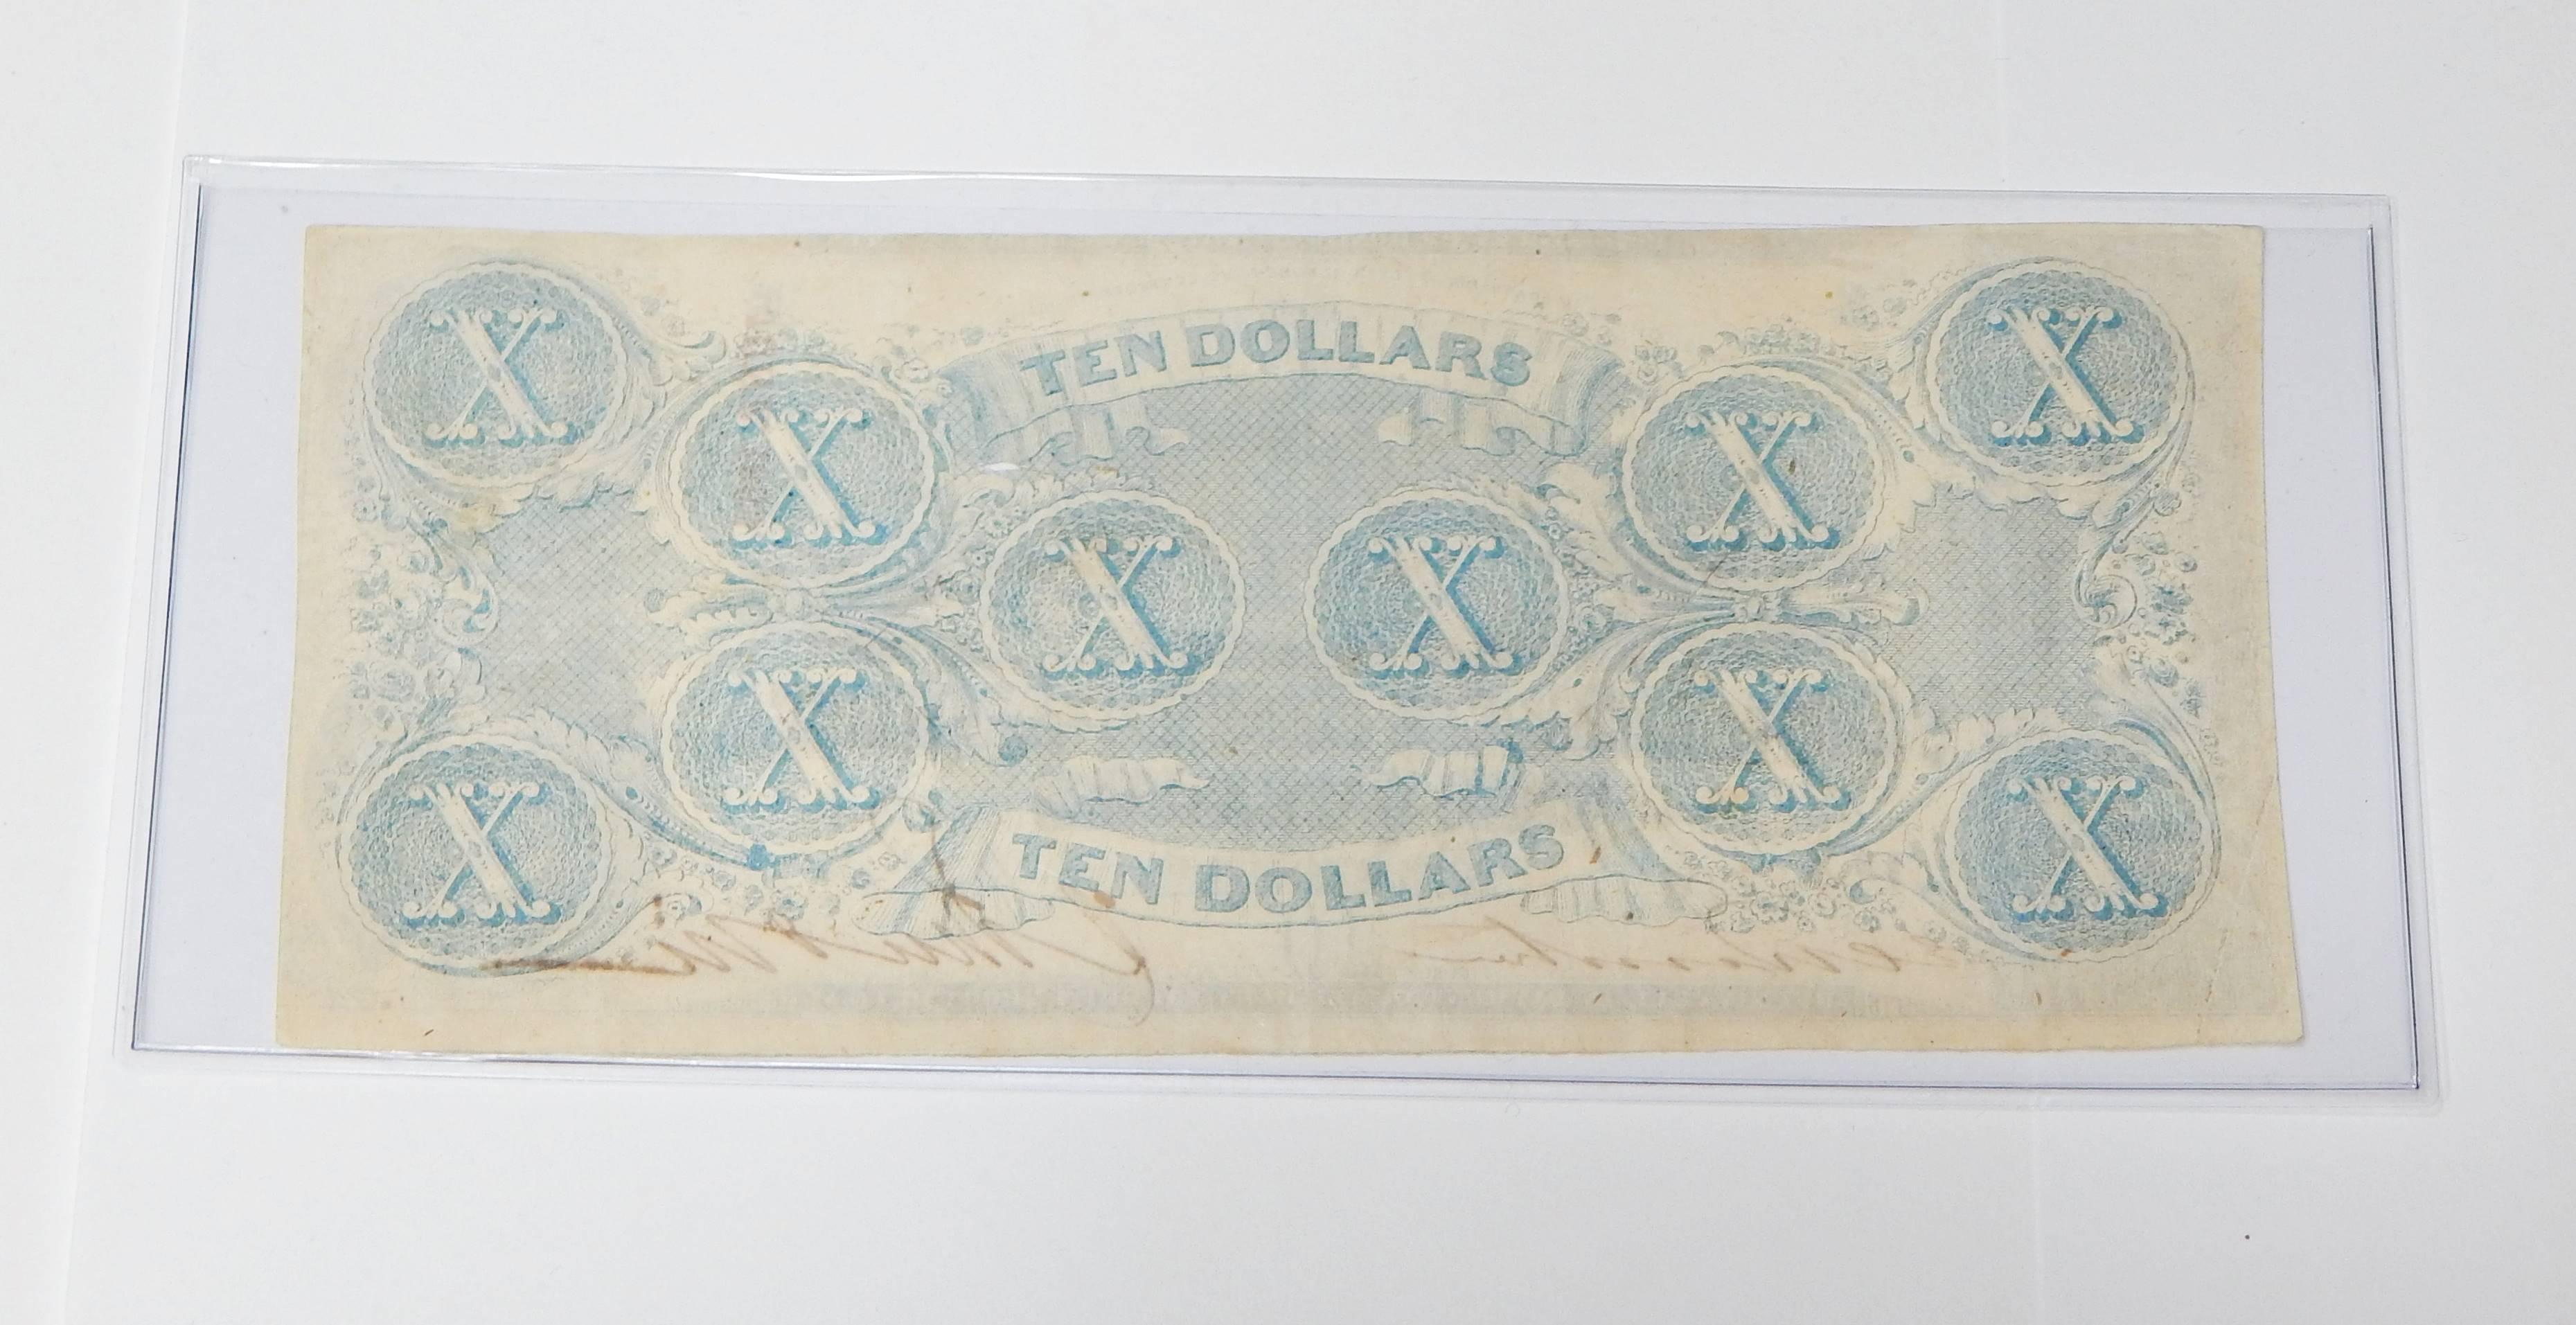 APRIL 6, 1863 CONFEDERATE $10 NOTE - CUT CANCELLED